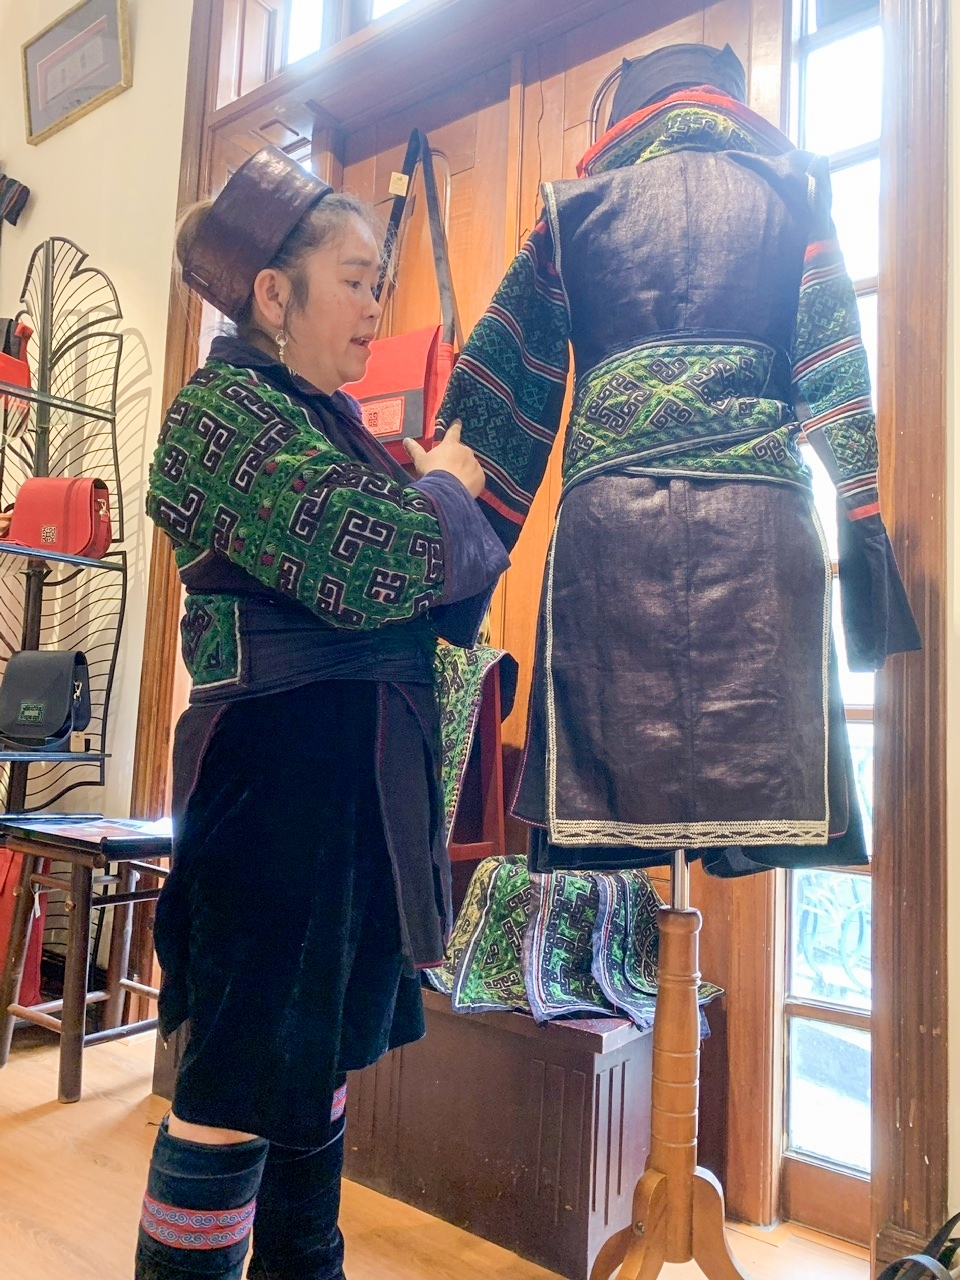 Nghệ nhân Thào Thị Sung giới thiệu về kỹ thuật thêu độc đáo trên bộ trang phục truyền thống của dân tộc